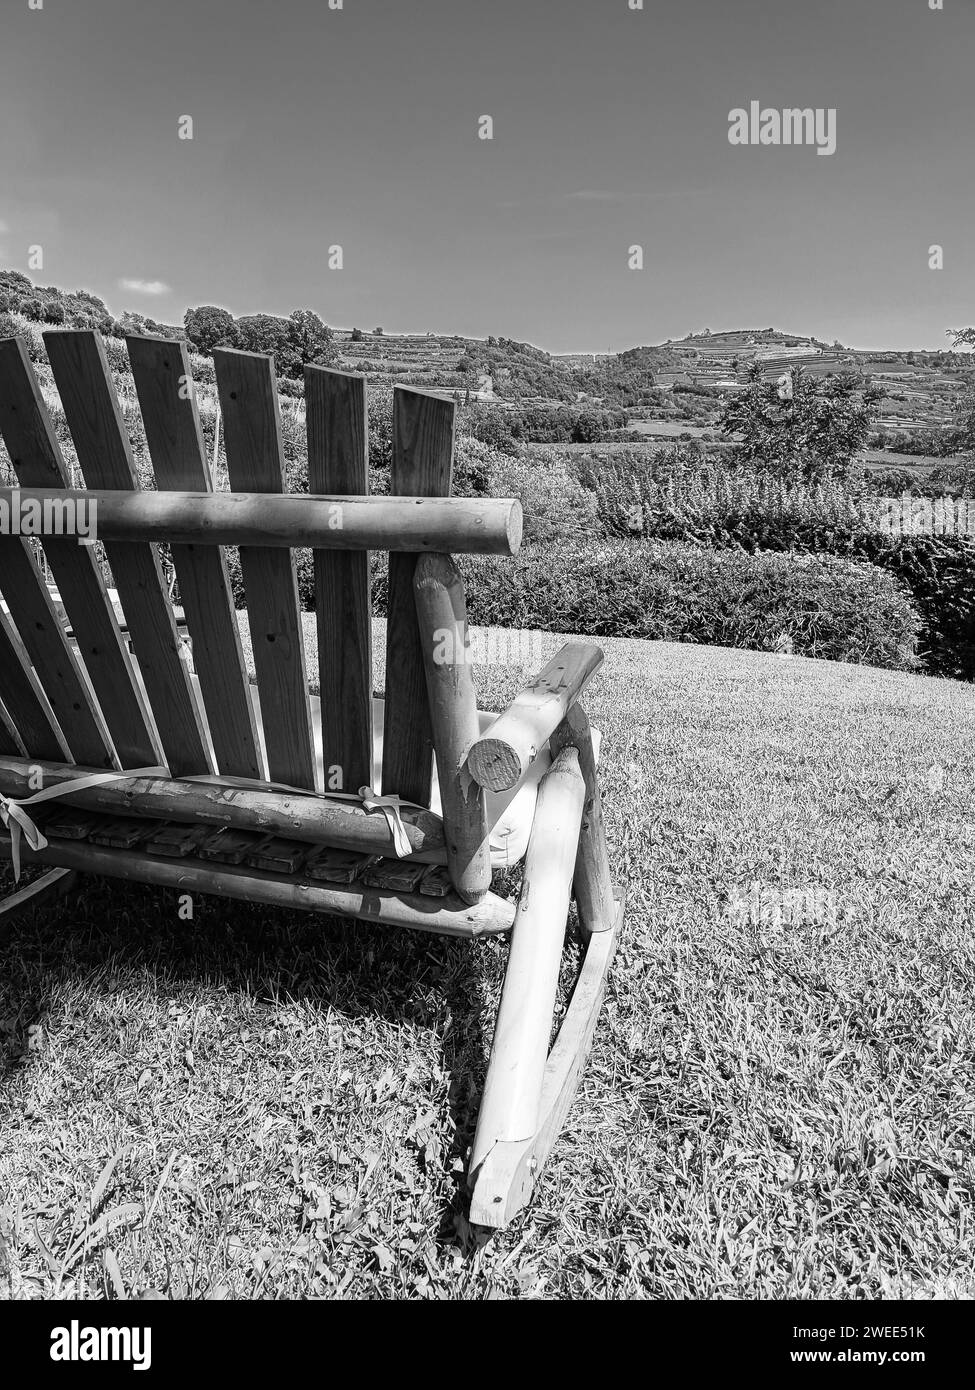 une chaise à bascule vintage dans un jardin Banque D'Images